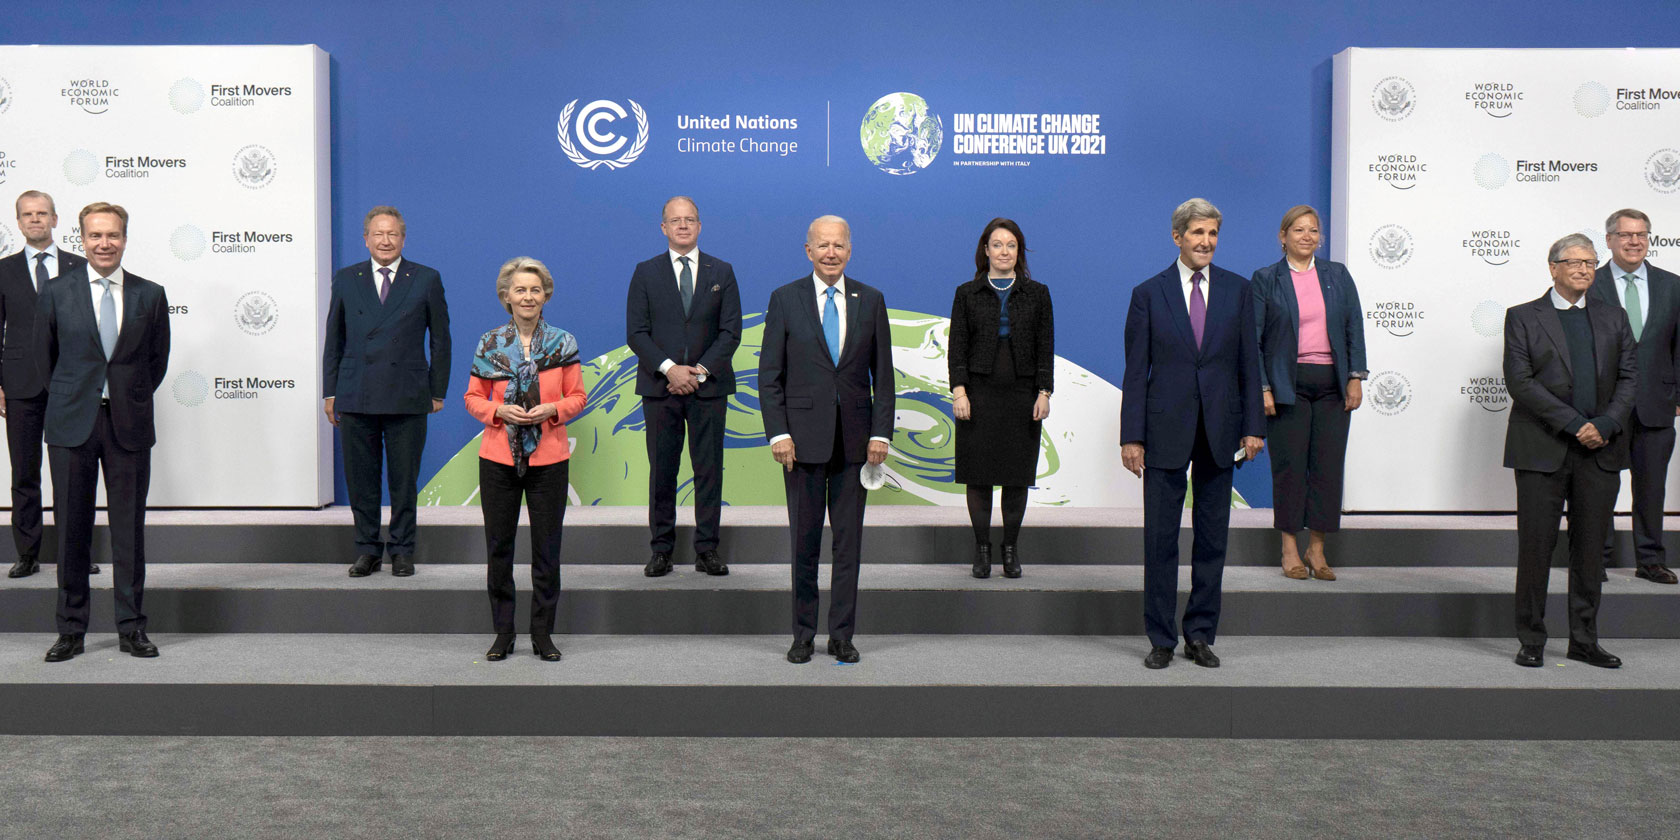 Einige Mitglieder der First Movers Coalition unter der Leitung des Weltwirtschaftsforums und des US-Büros des Sonderbeauftragten des Präsidenten für Klima John Kerry treffen sich am Rande der COP26. Anna Borg, President und CEO von Vattenfall, steht hinter Präsident Biden.